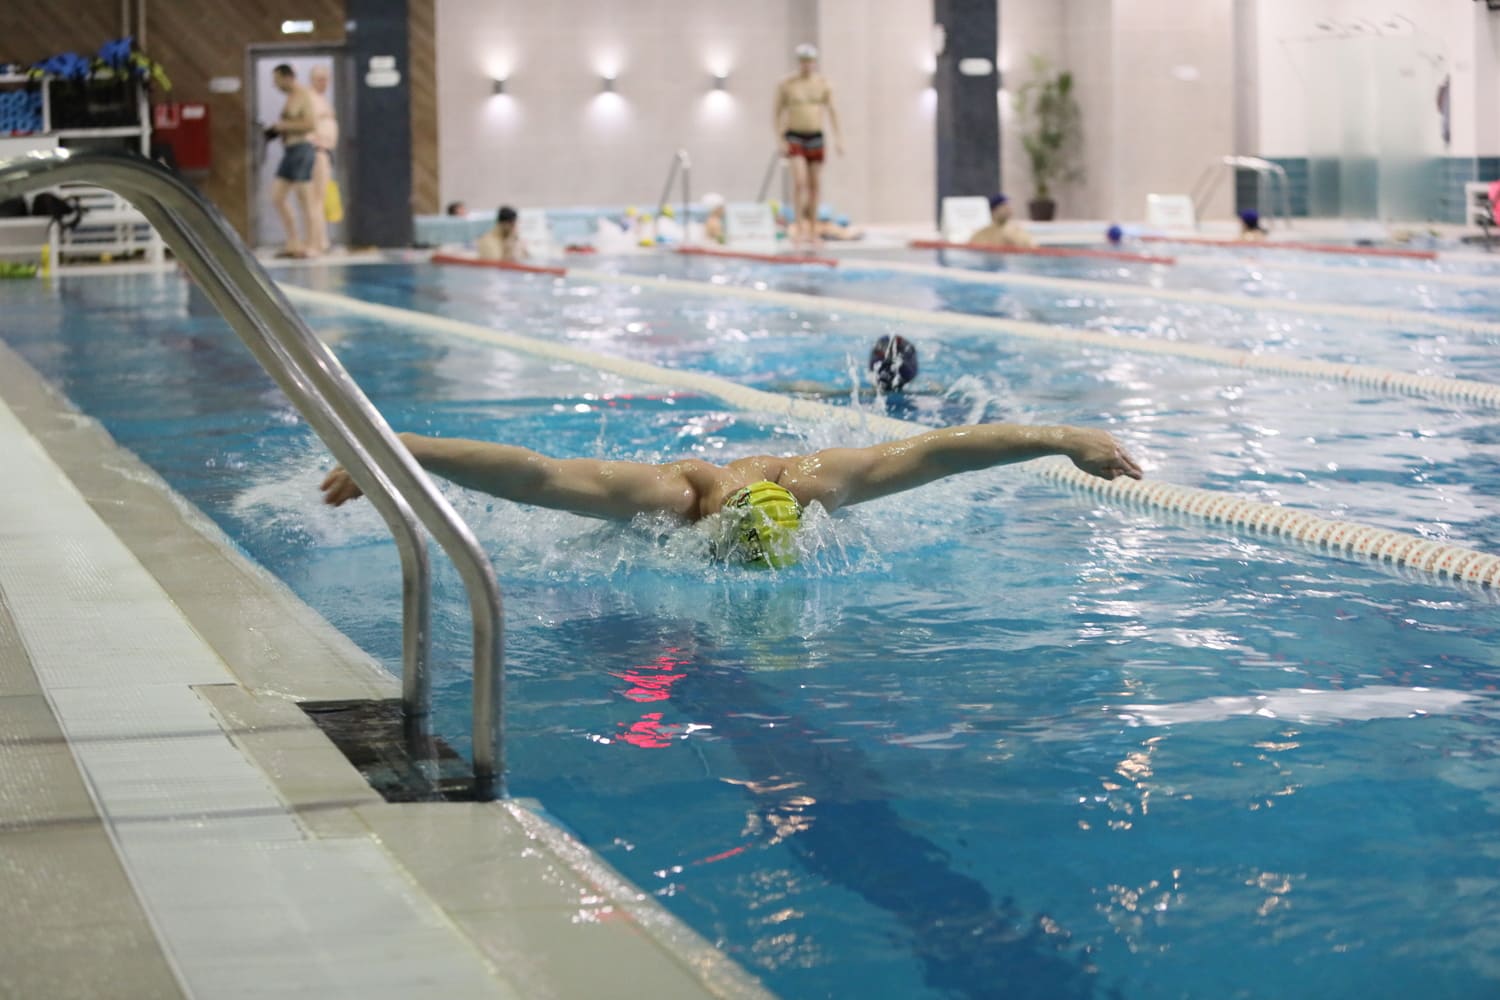 Обучение плаванию взрослых в школе плавания для детей и взрослых Strong Swim в Москве. Научиться плавать с нуля или улучшить технику плавания кролем, брассом, баттерфляем, на спине в бассейнах Москвы